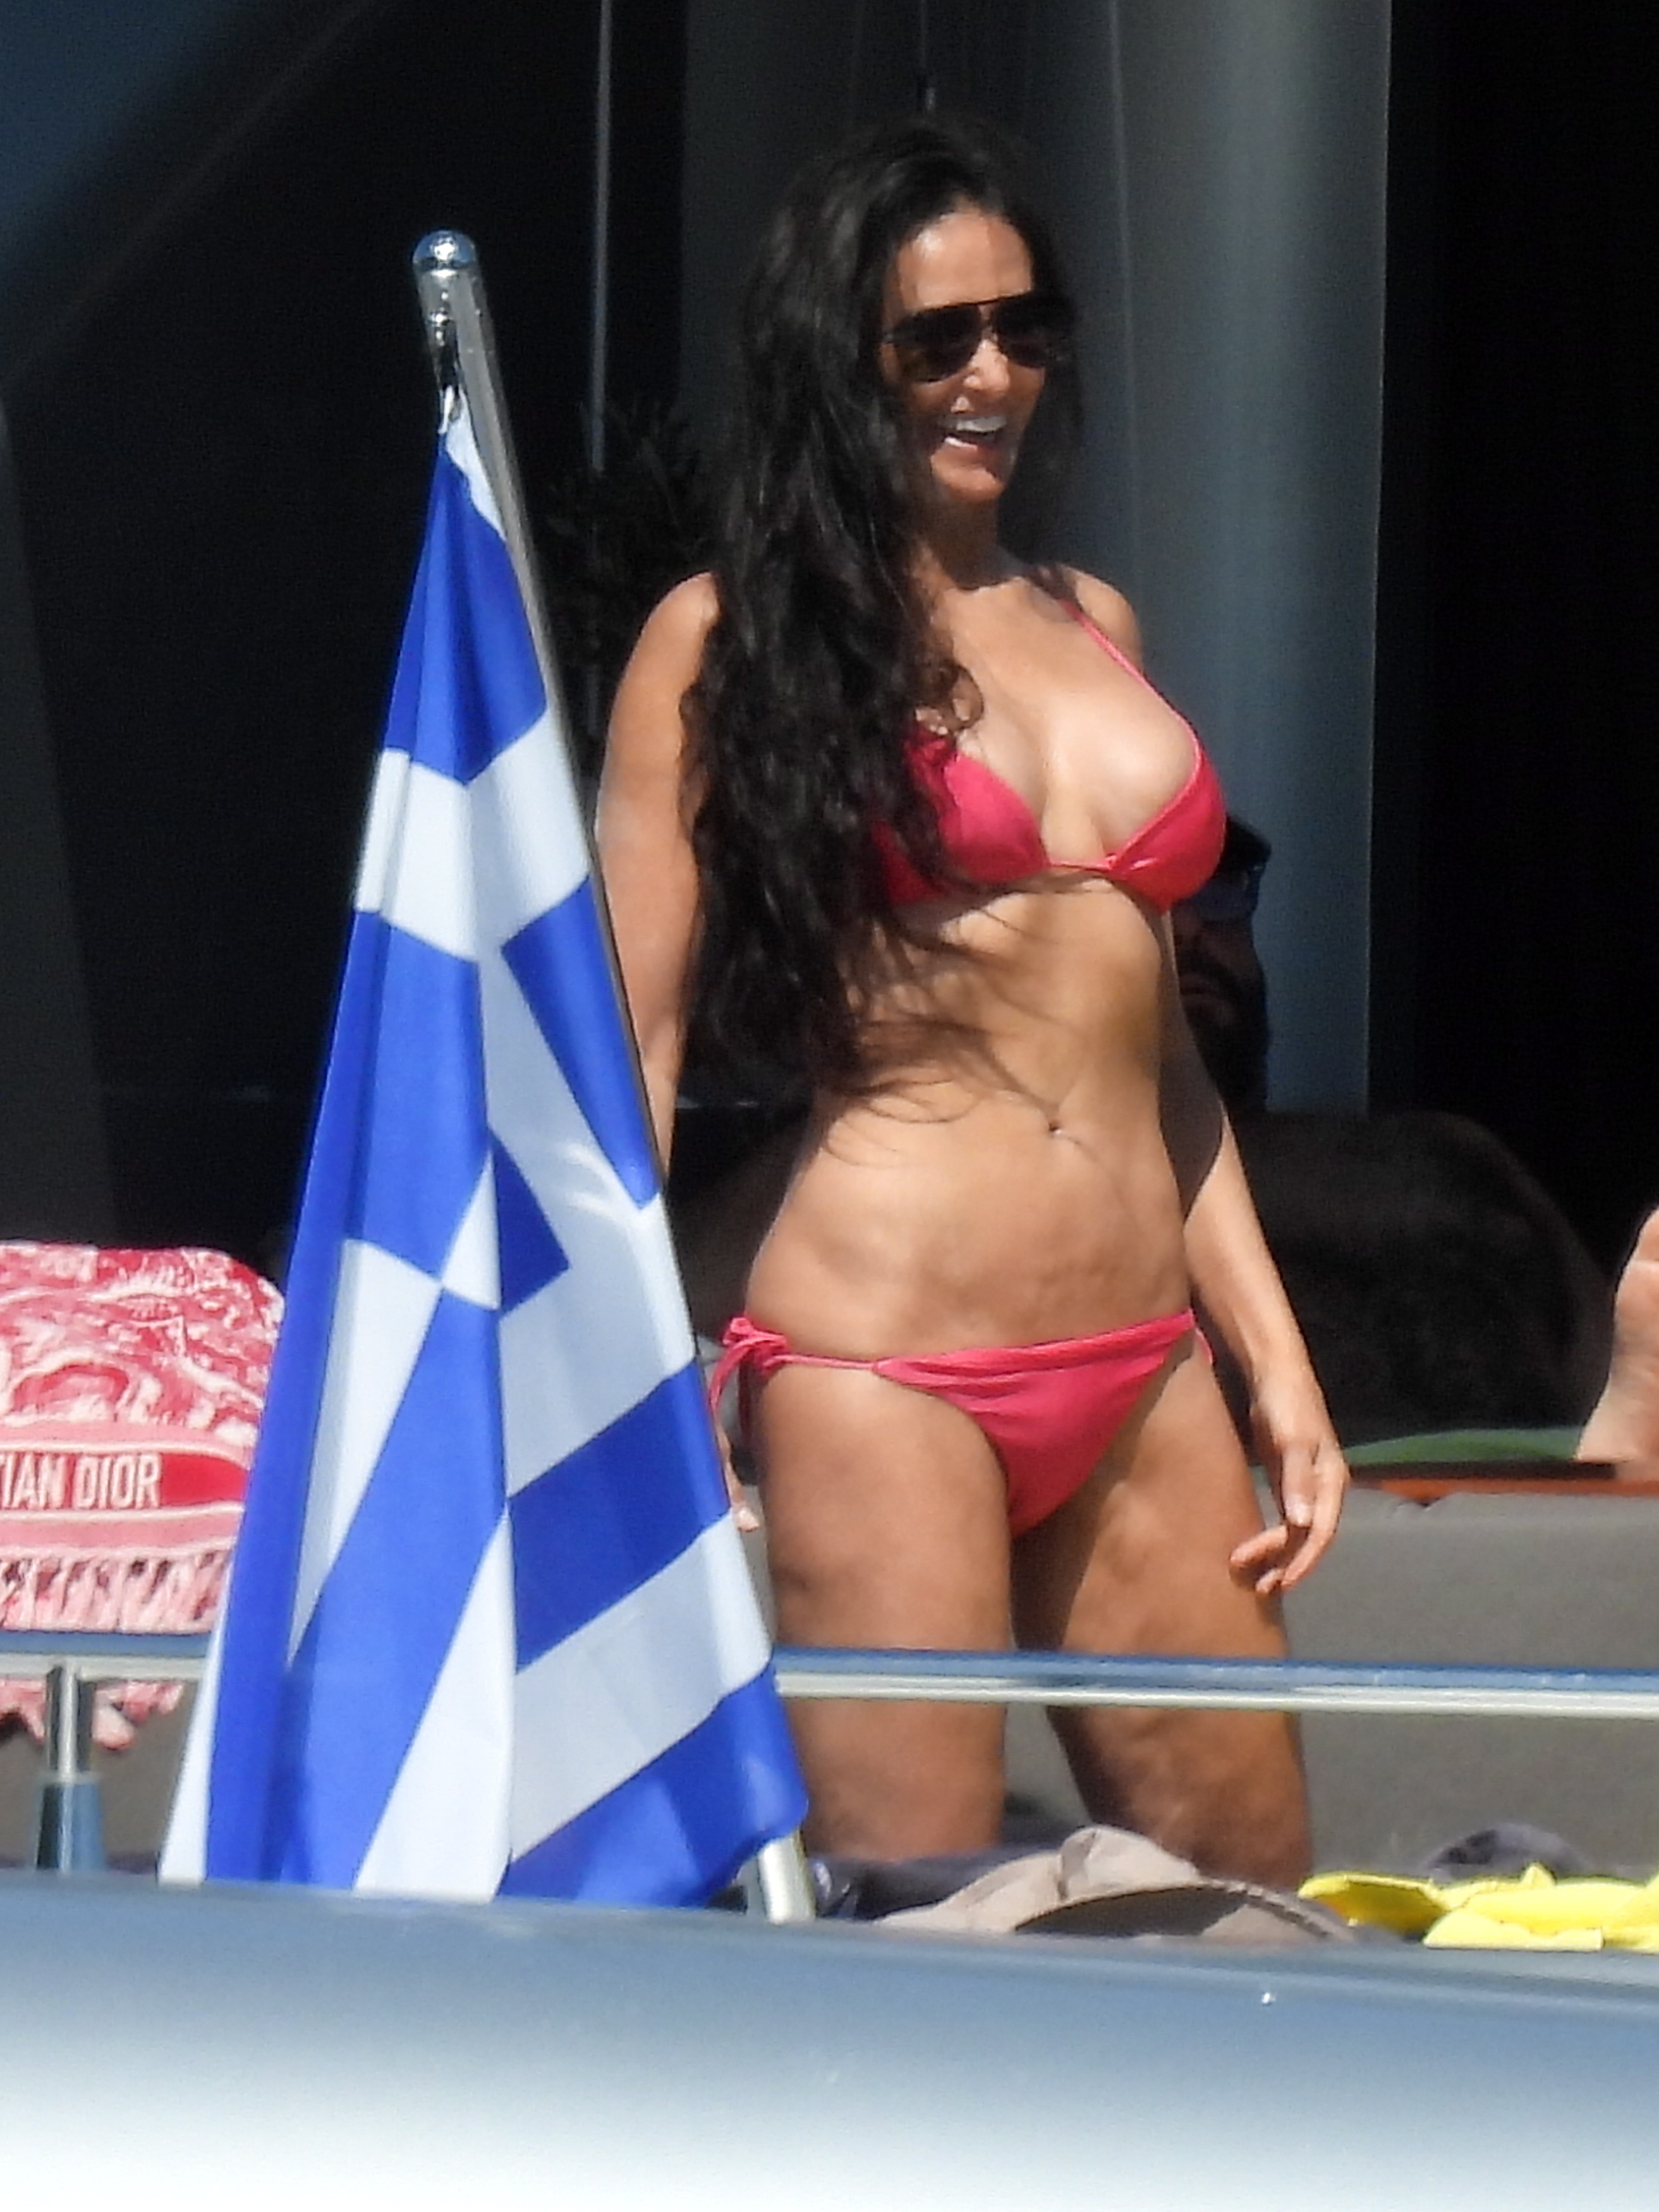 Una de las últimas imágenes de Demi. De vacaciones en Grecia, con un bikini fucsia y la belleza deslumbrante de siempre
Photo © 2022 Splash News/The Grosby Group

